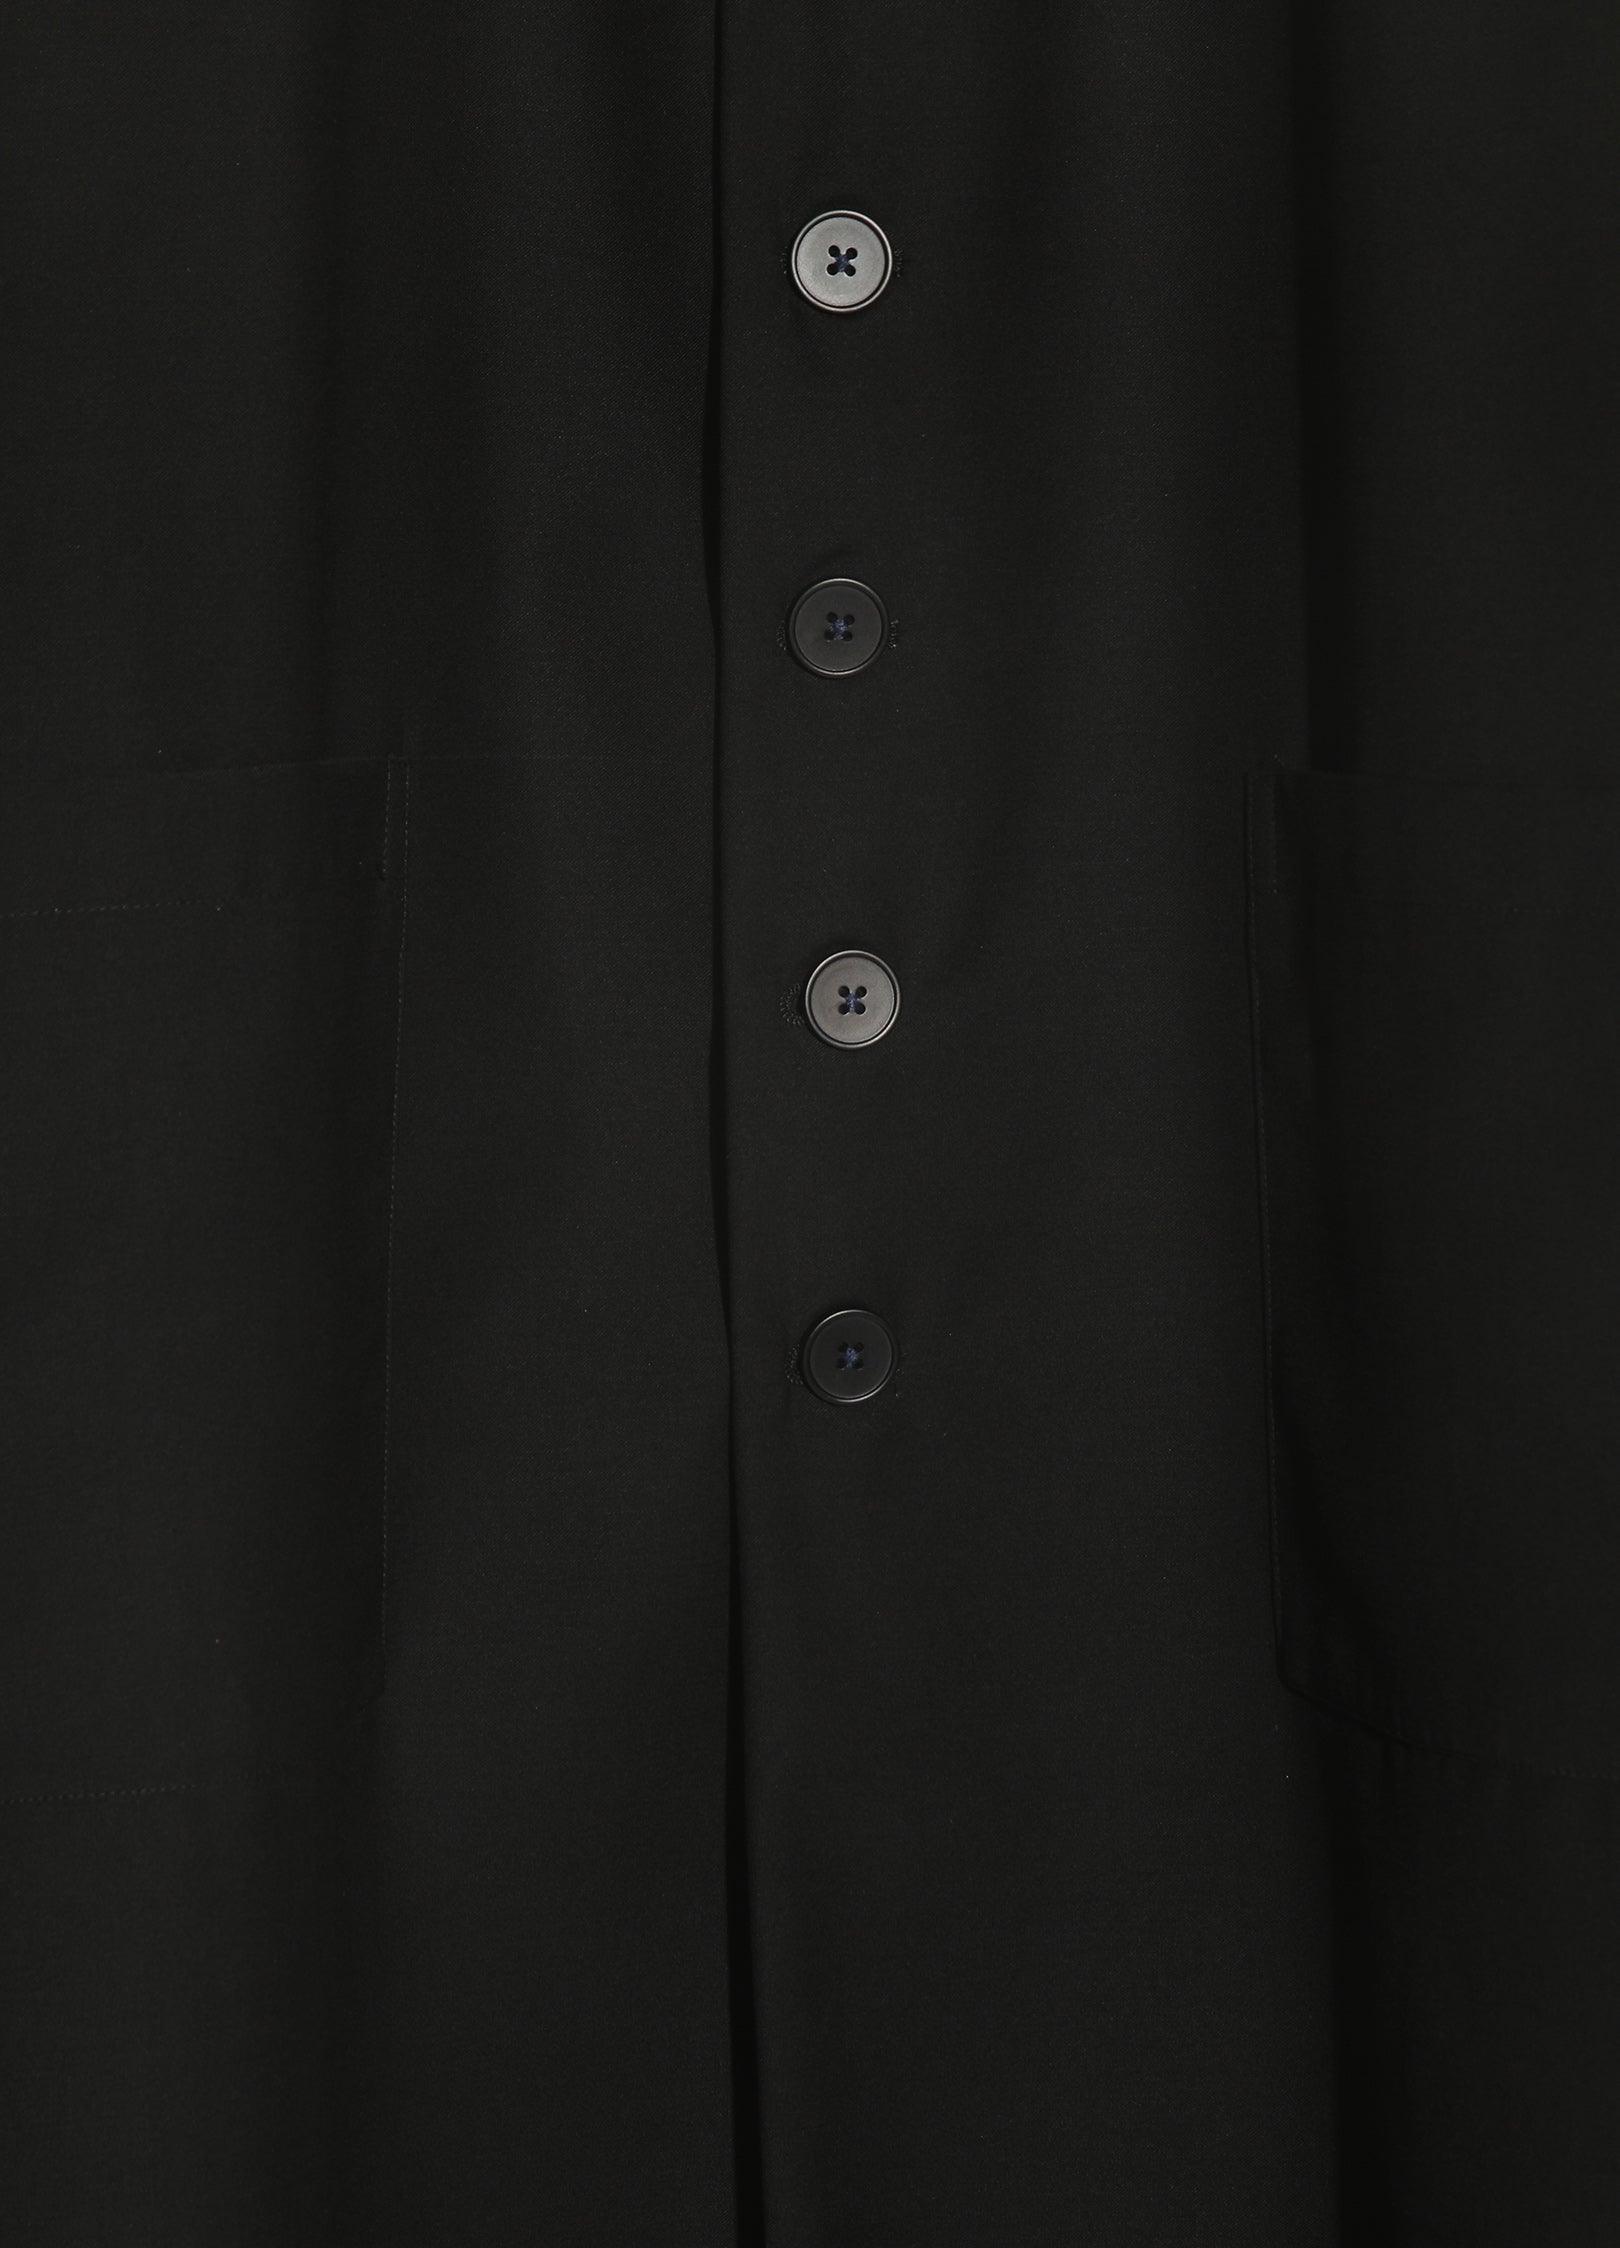 Elegant Black Suit Vest by VAPOUR BLUE - chiclara